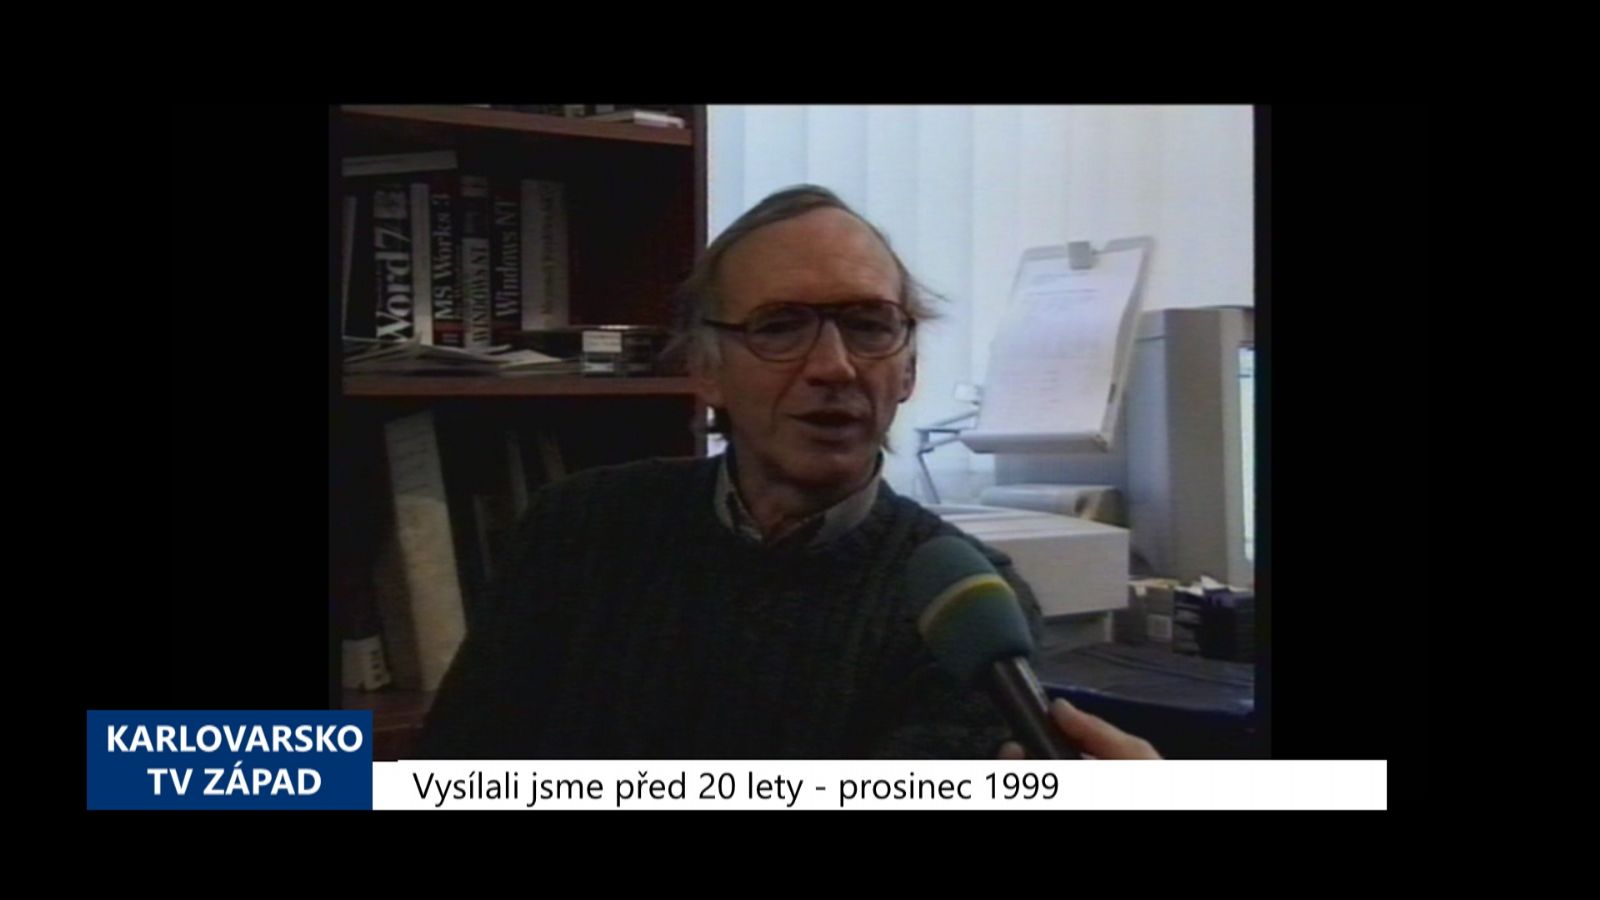 1999 - Chebsko: Vánoční přání osobností (TV Západ)